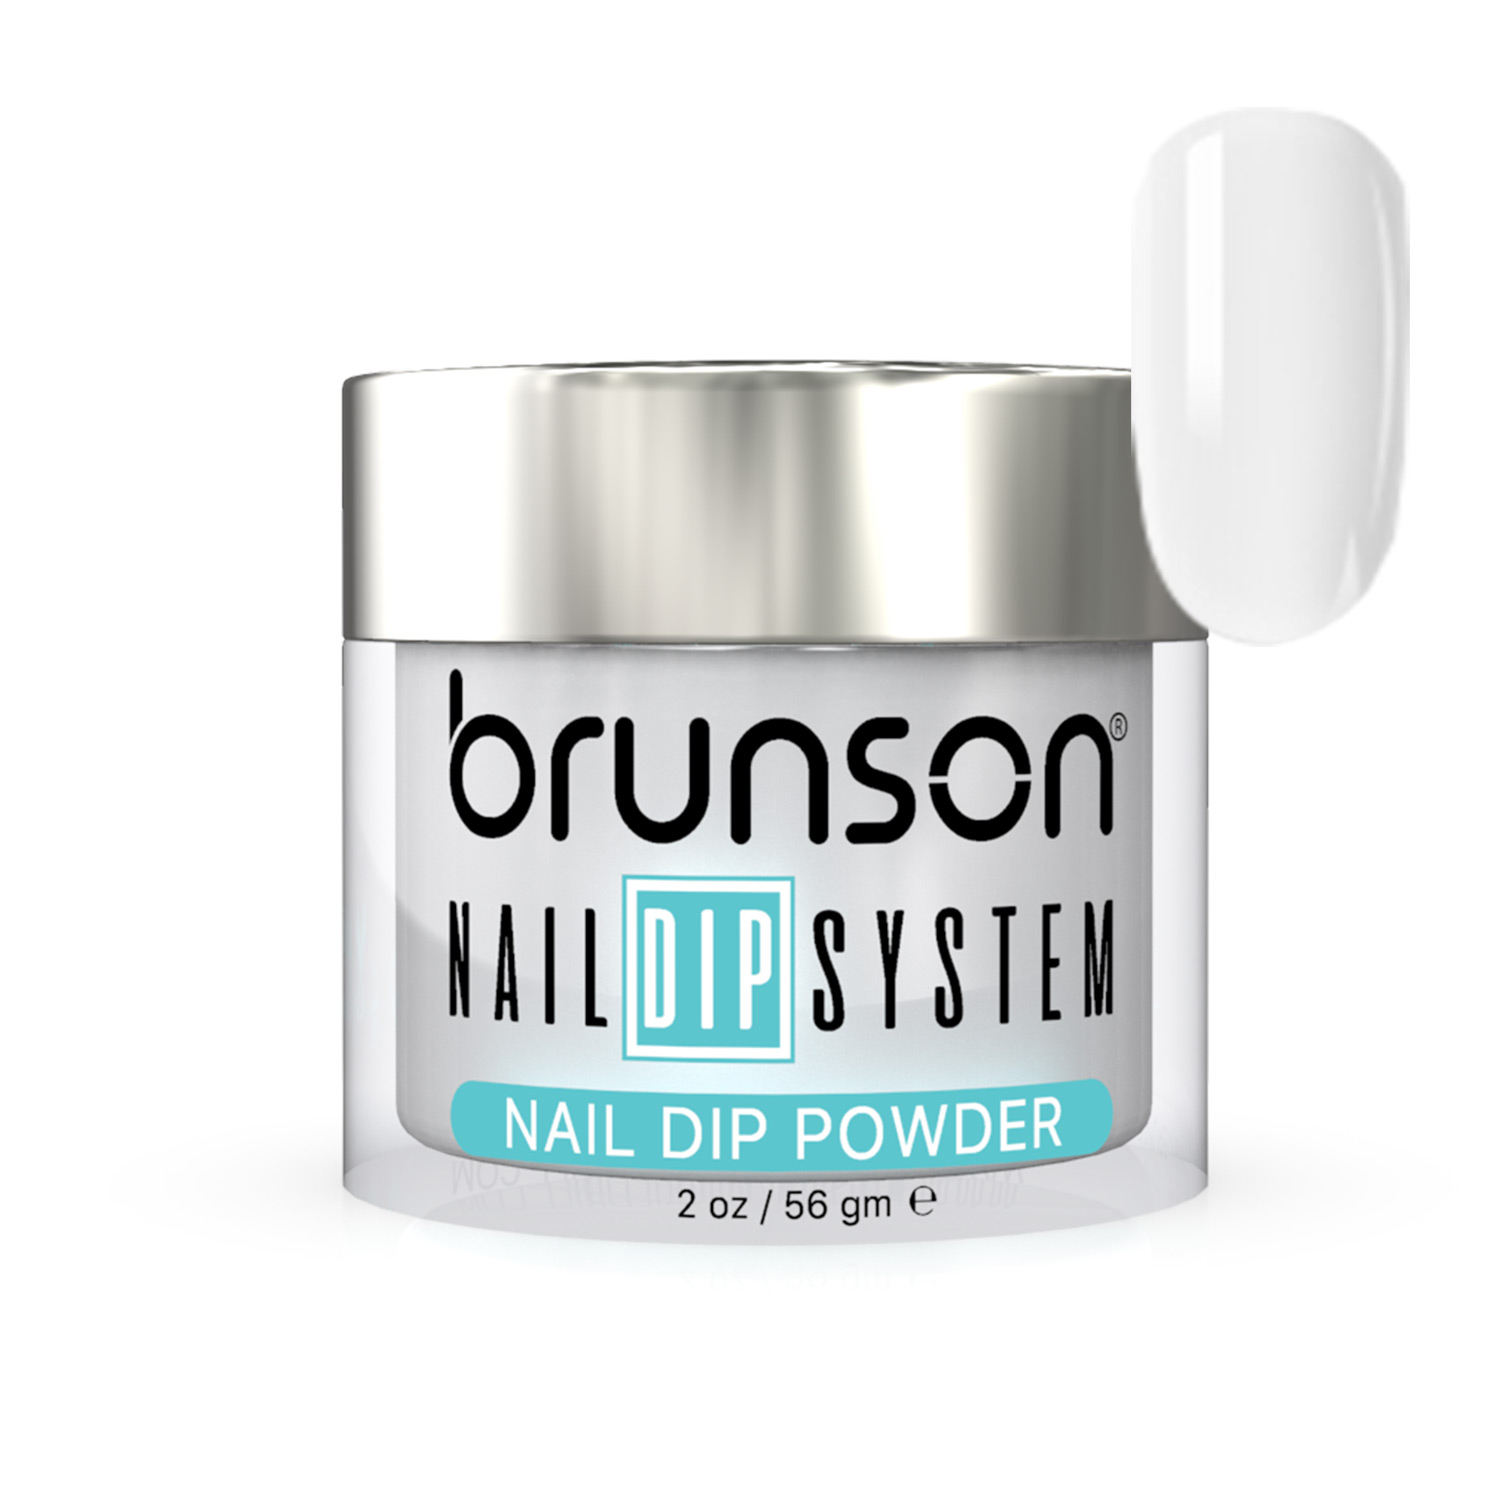 Nail dipping powder